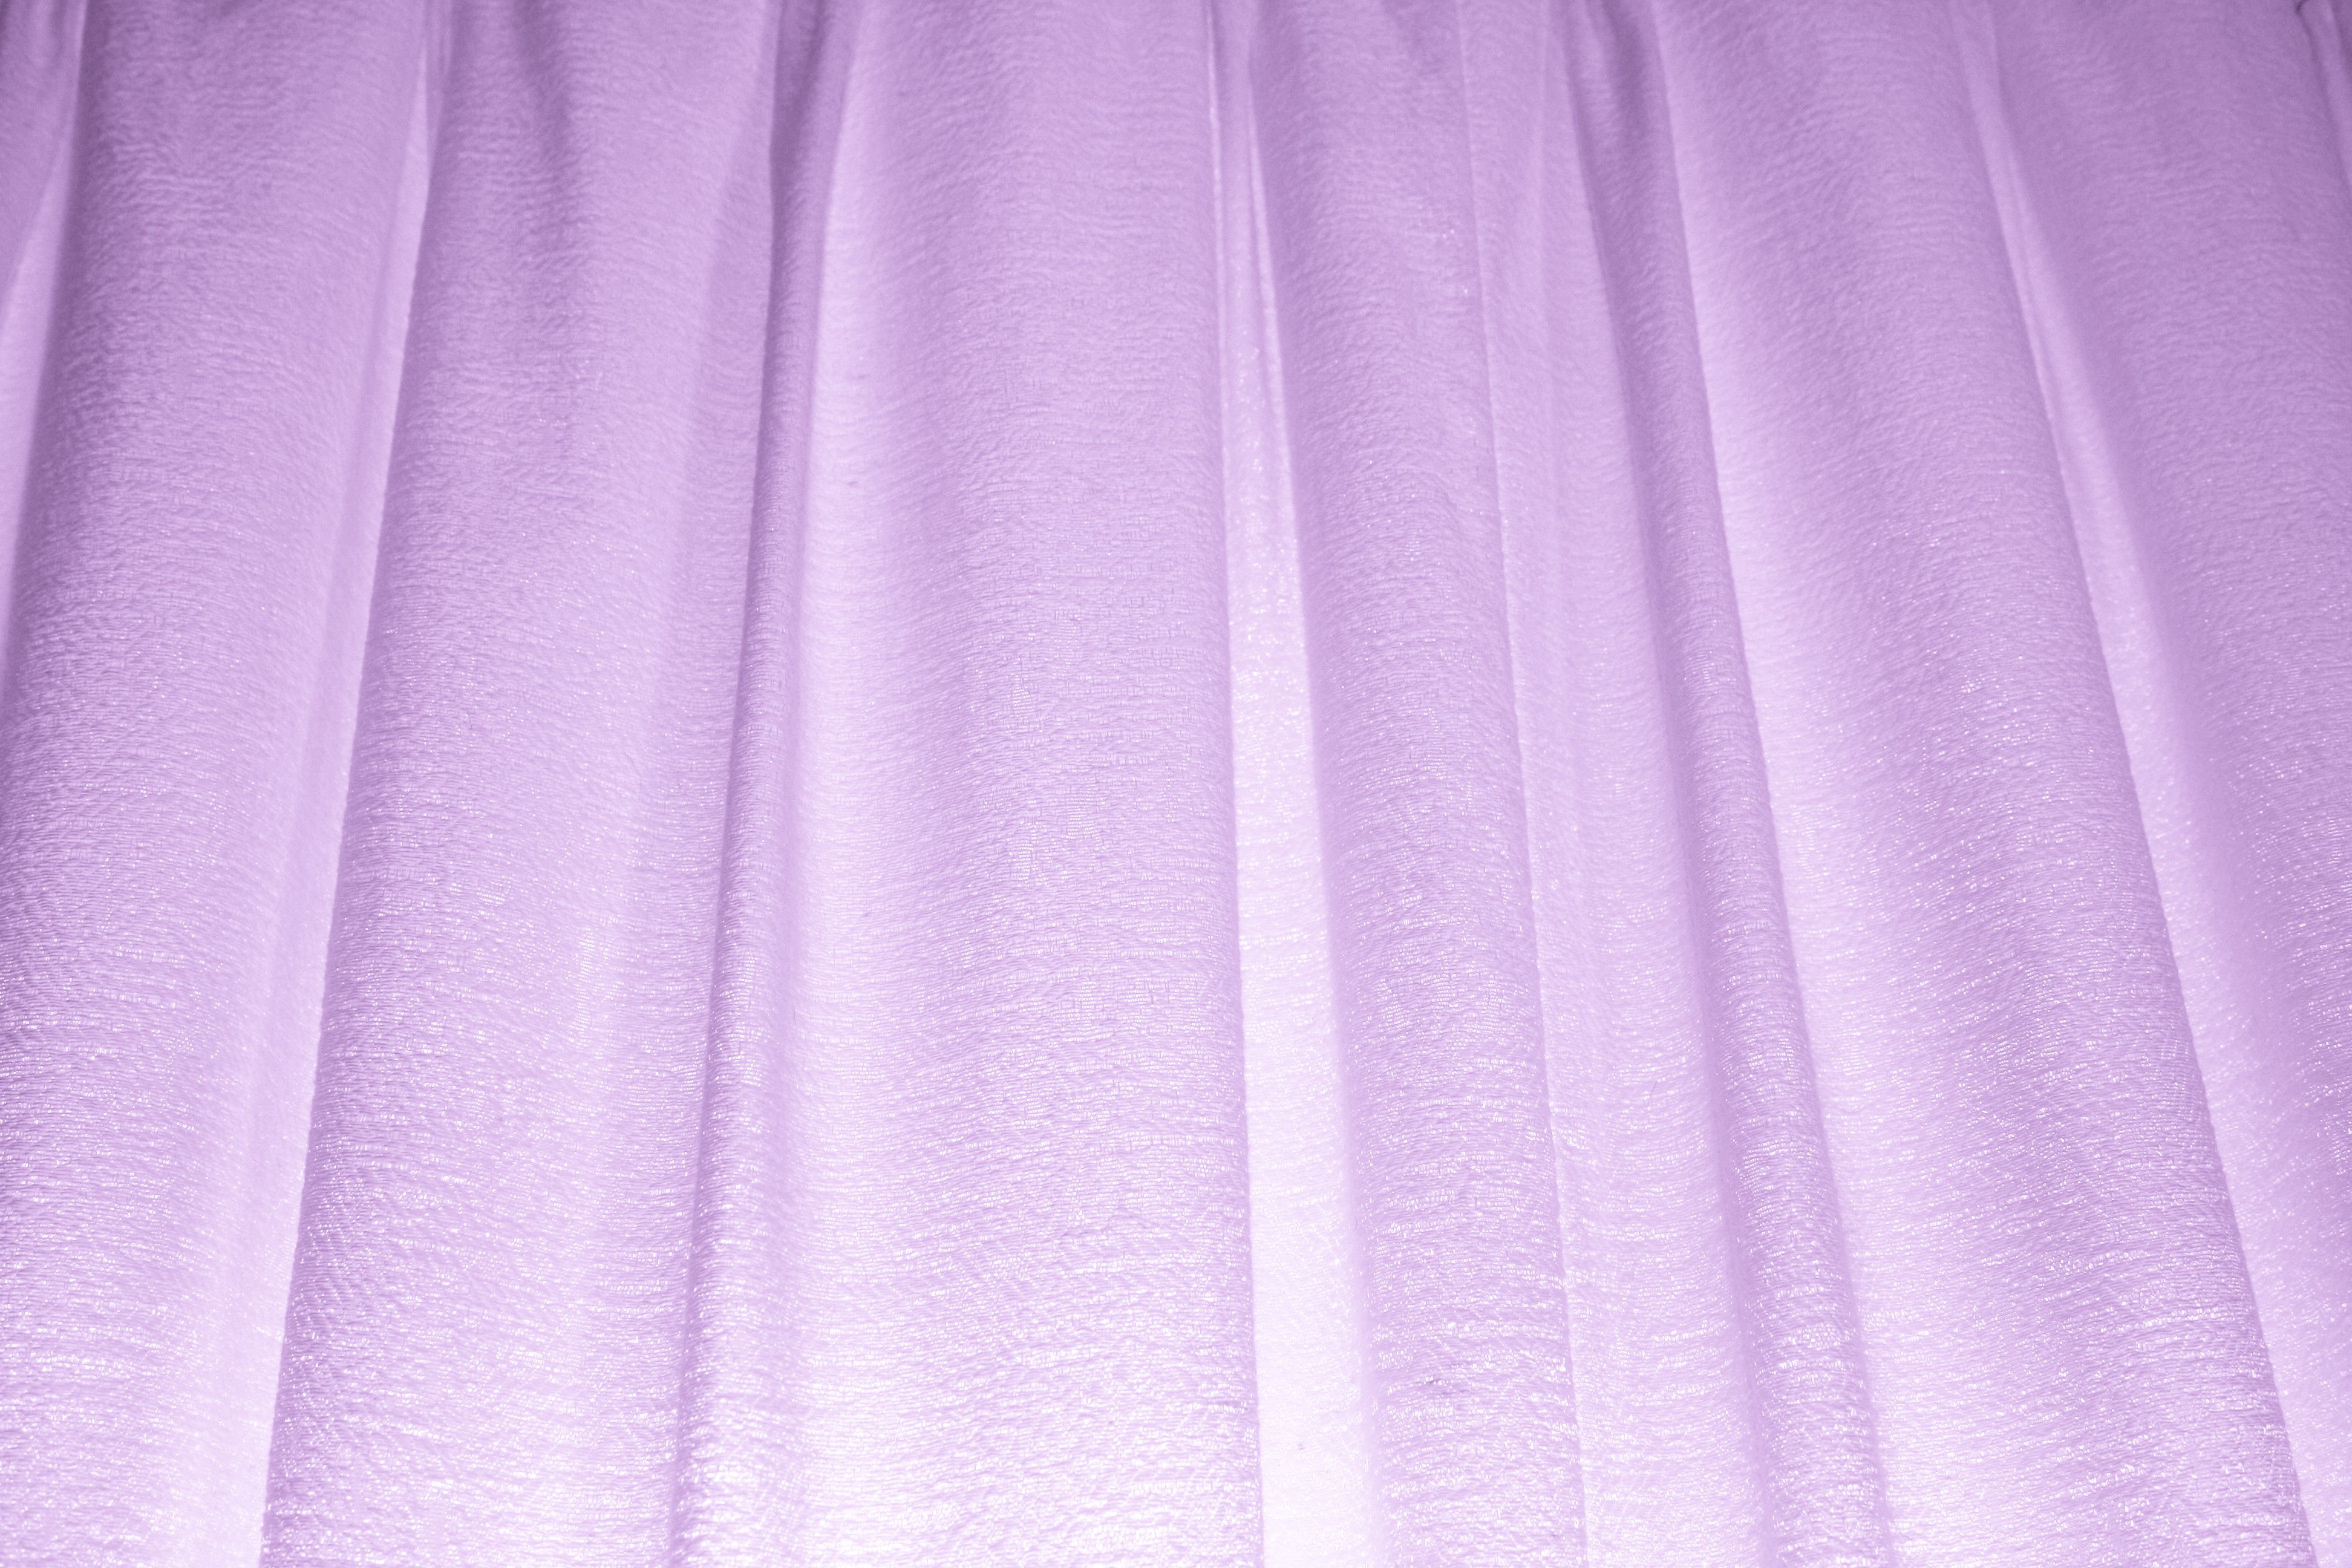 Light Purple Curtains Texture Picture Photograph Photos